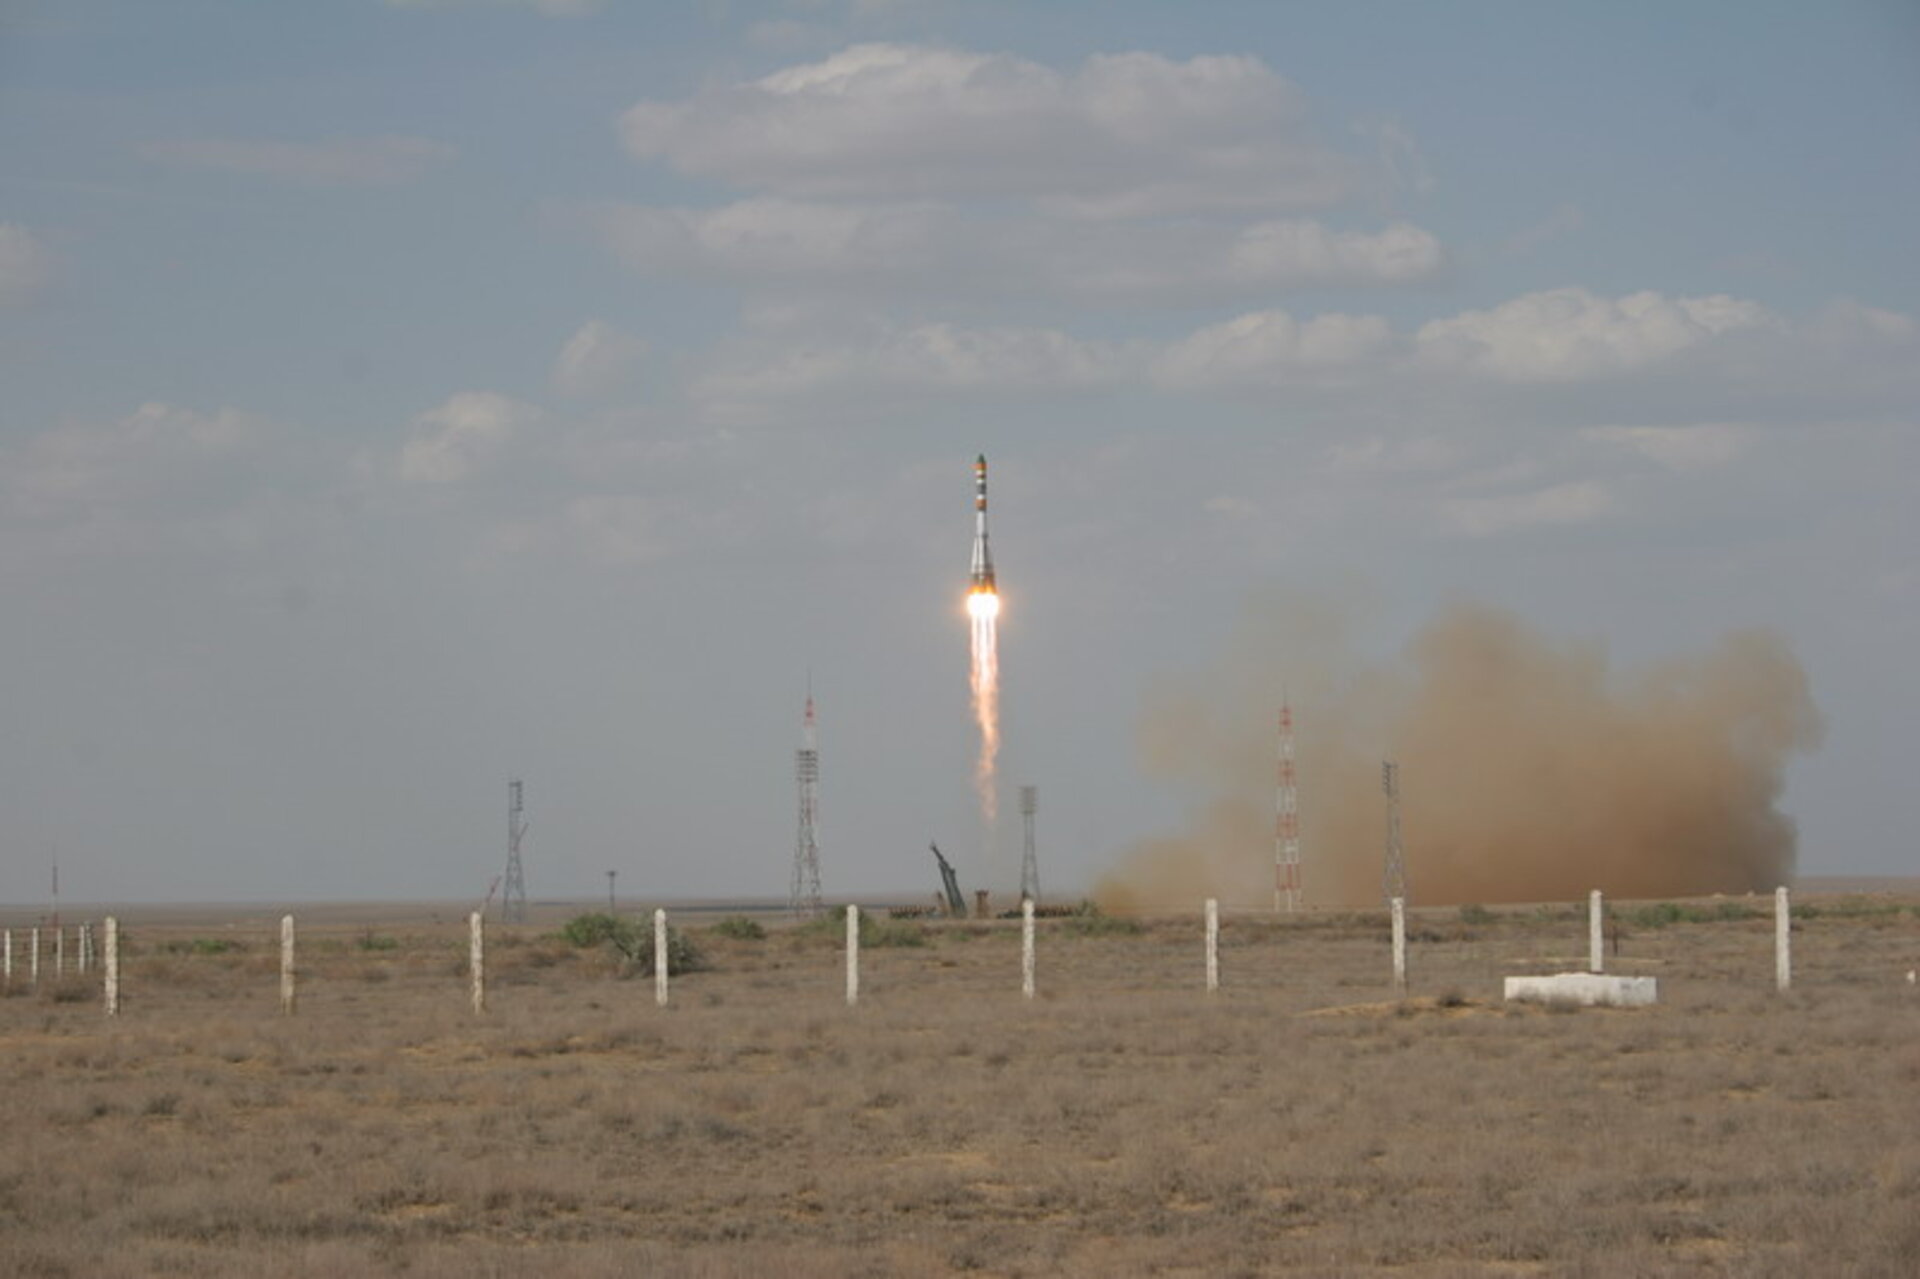 Erfolgreicher Start der Foton-M 2 Mission vom Raumfahrtzentrum Baikonur